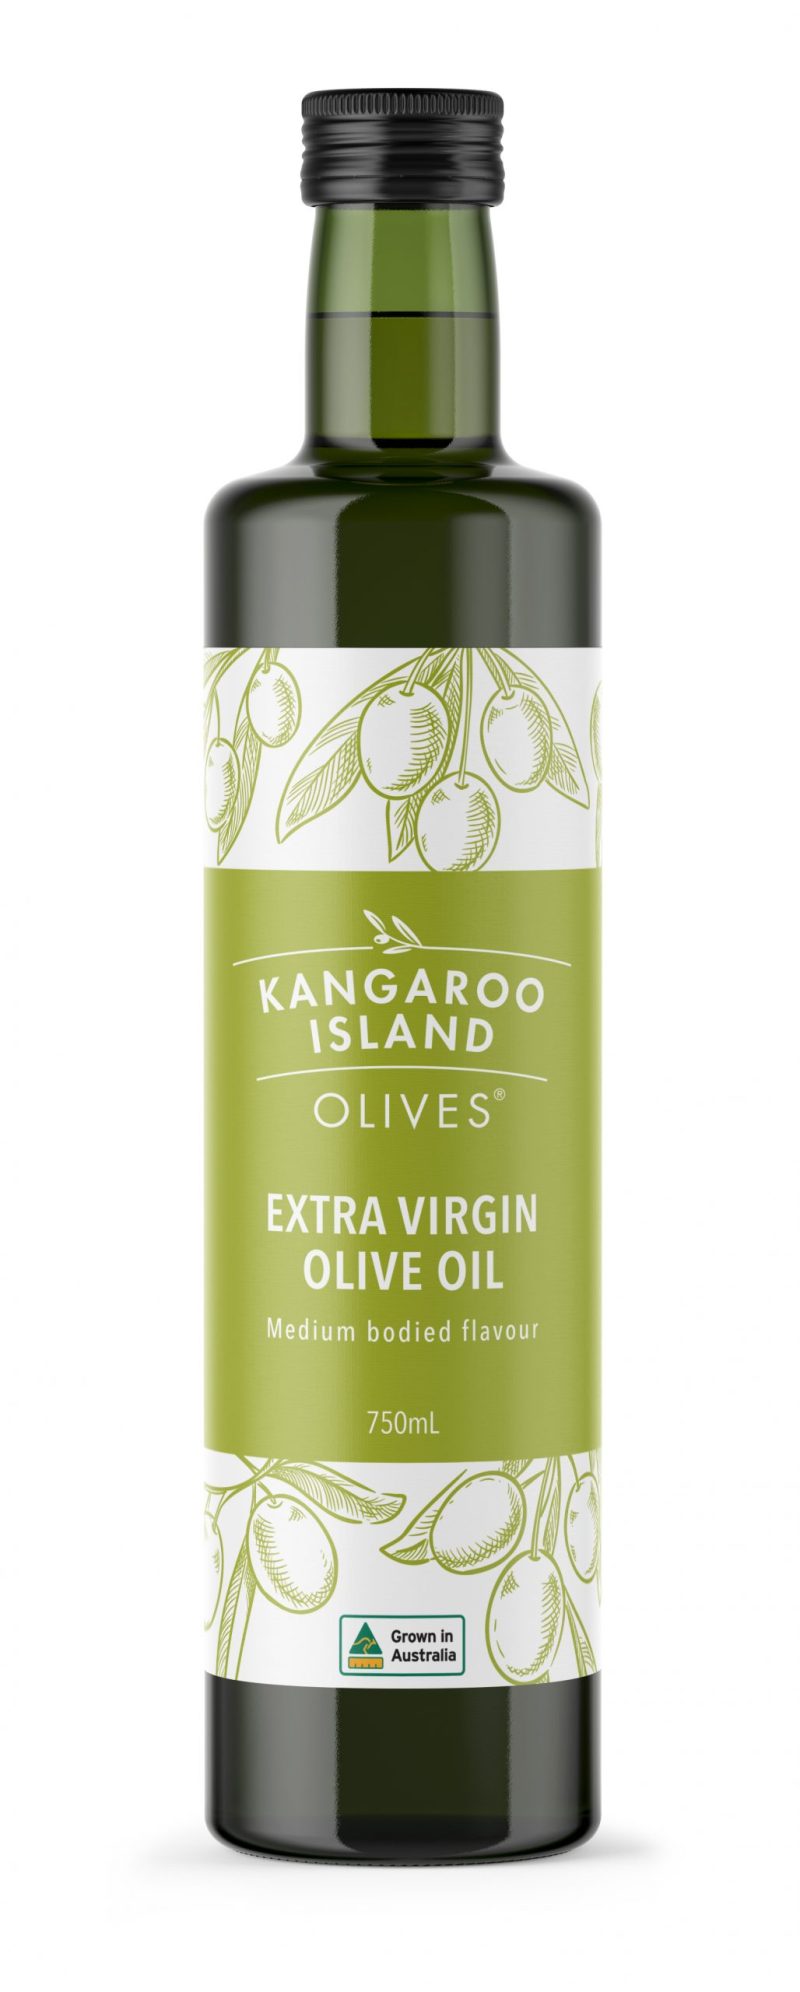 Kangaroo island olives little liguria extra virgin olive oil table olives